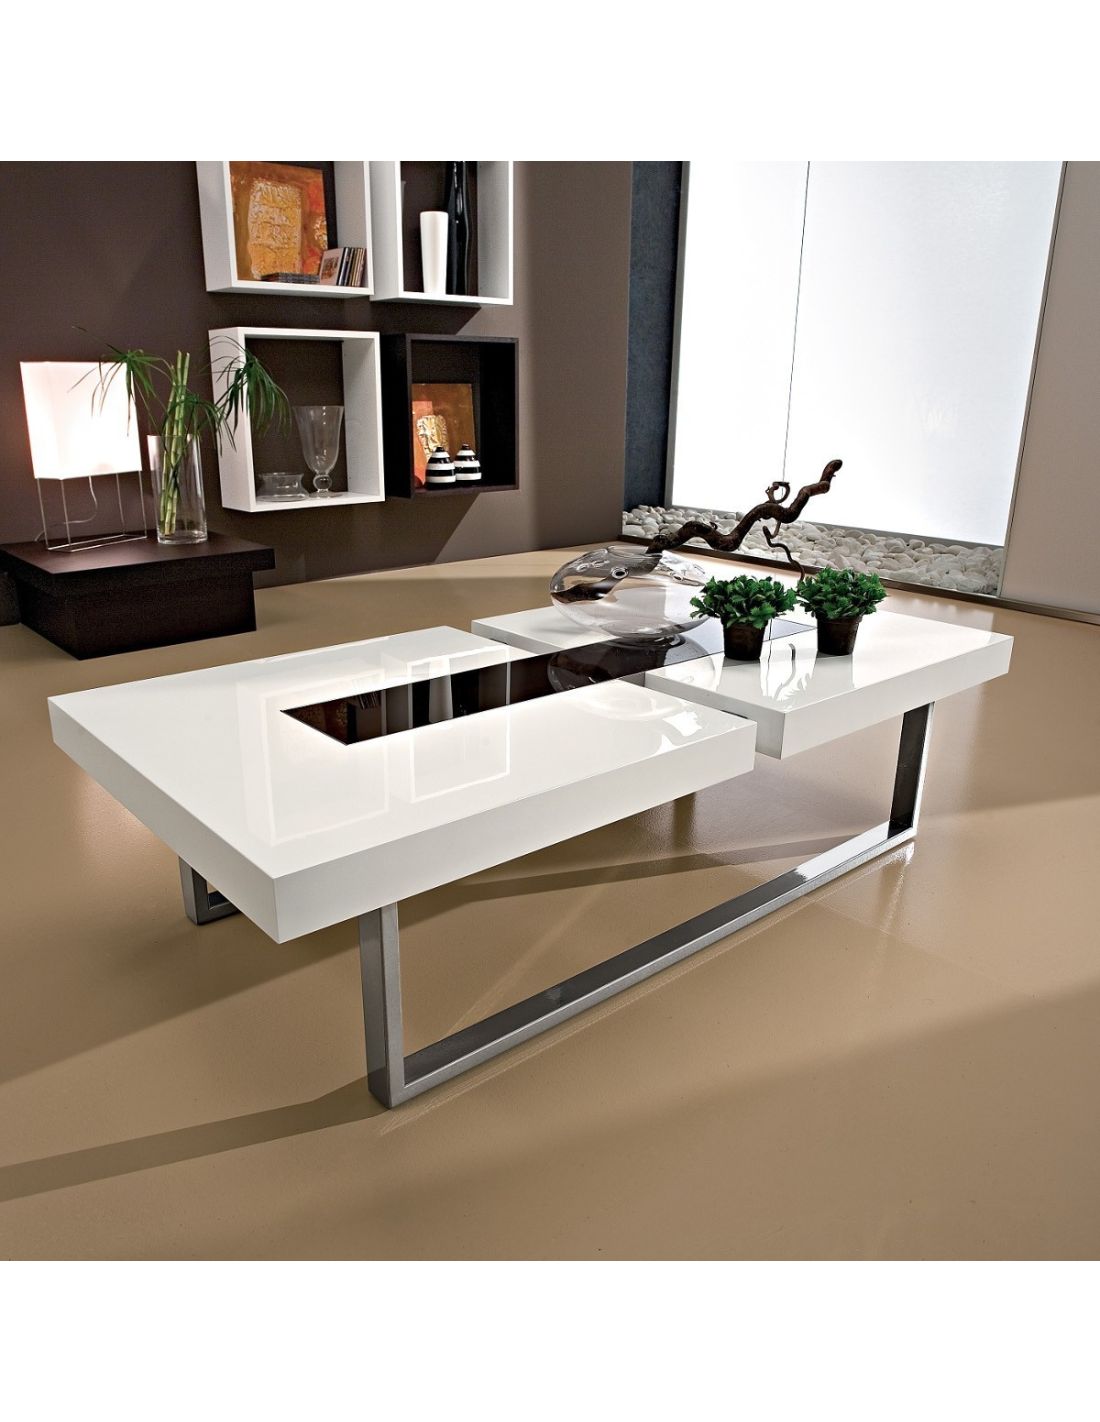 Tavolino da salotto in legno metallo vetro 125 x 60 cm klemens for Design salotto